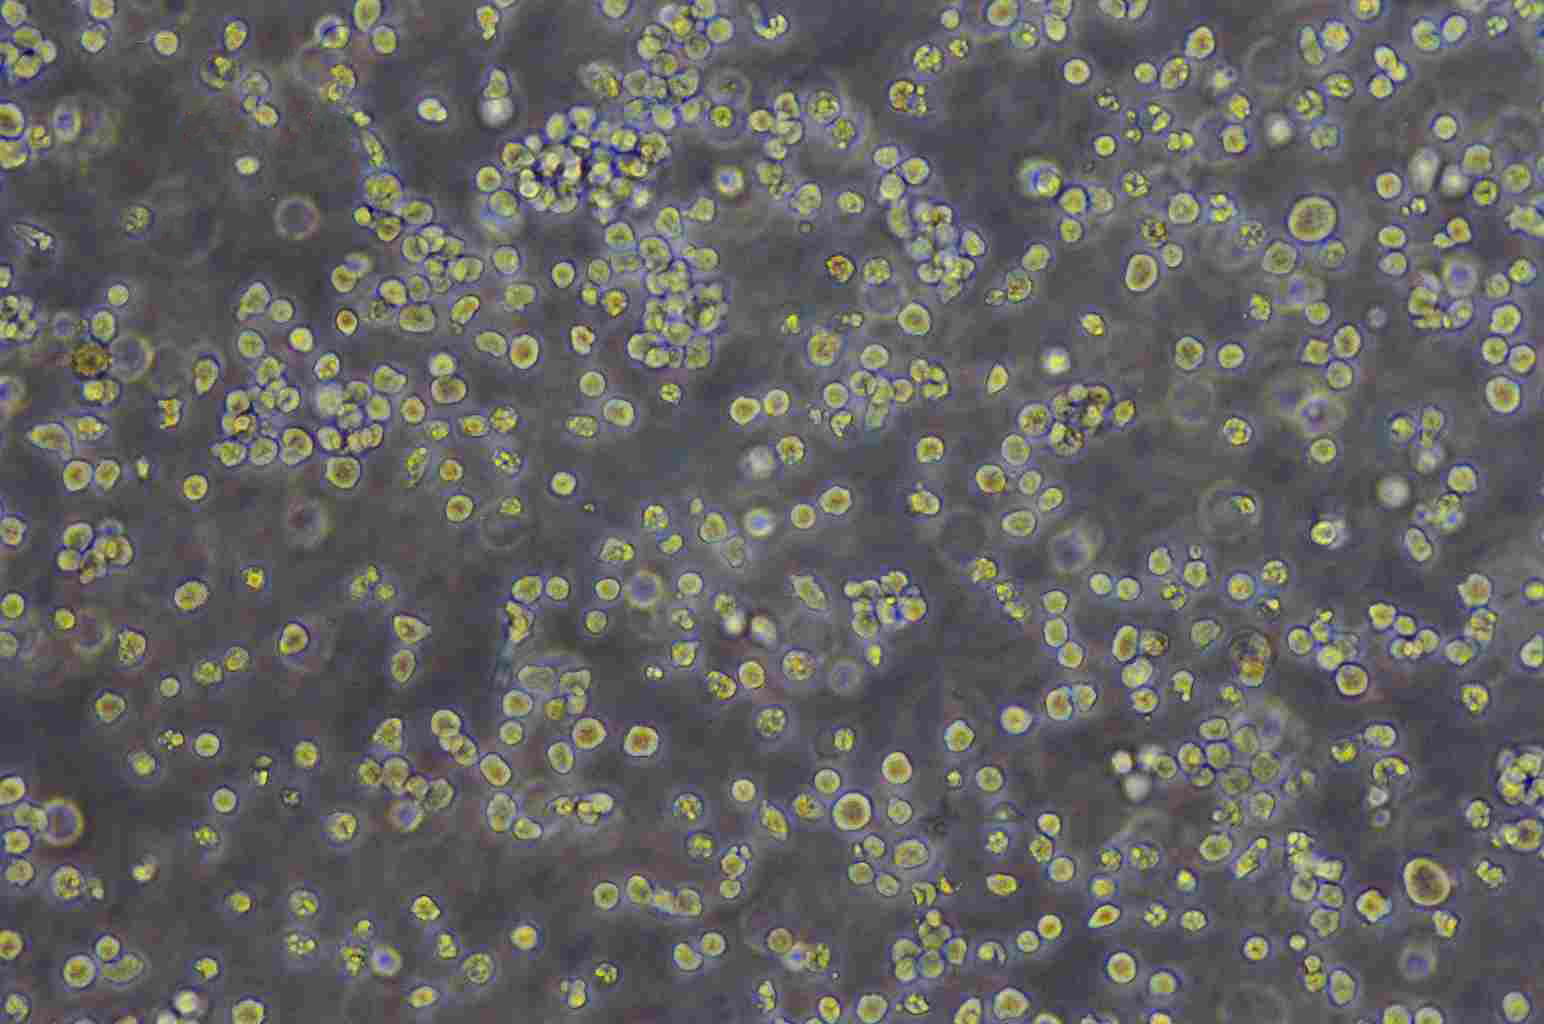 MC116 Cell:人(未分化的)淋巴瘤细胞系,MC116 Cell